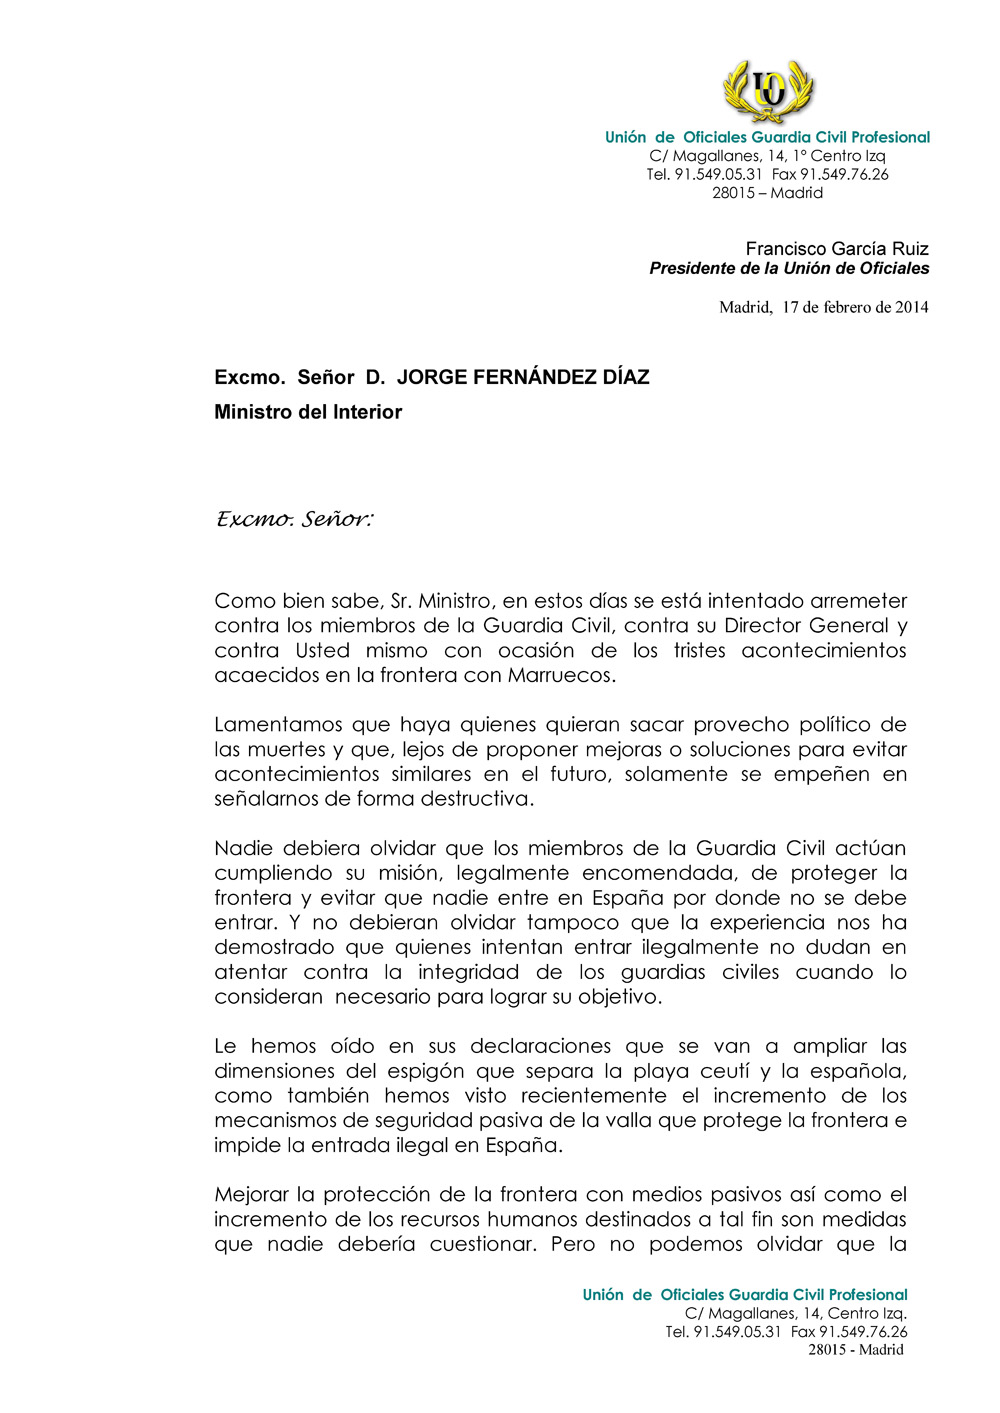 CARTA AL MINISTRO INTERIOR PROBLEMAS FRONTERA_Página_1.jpg